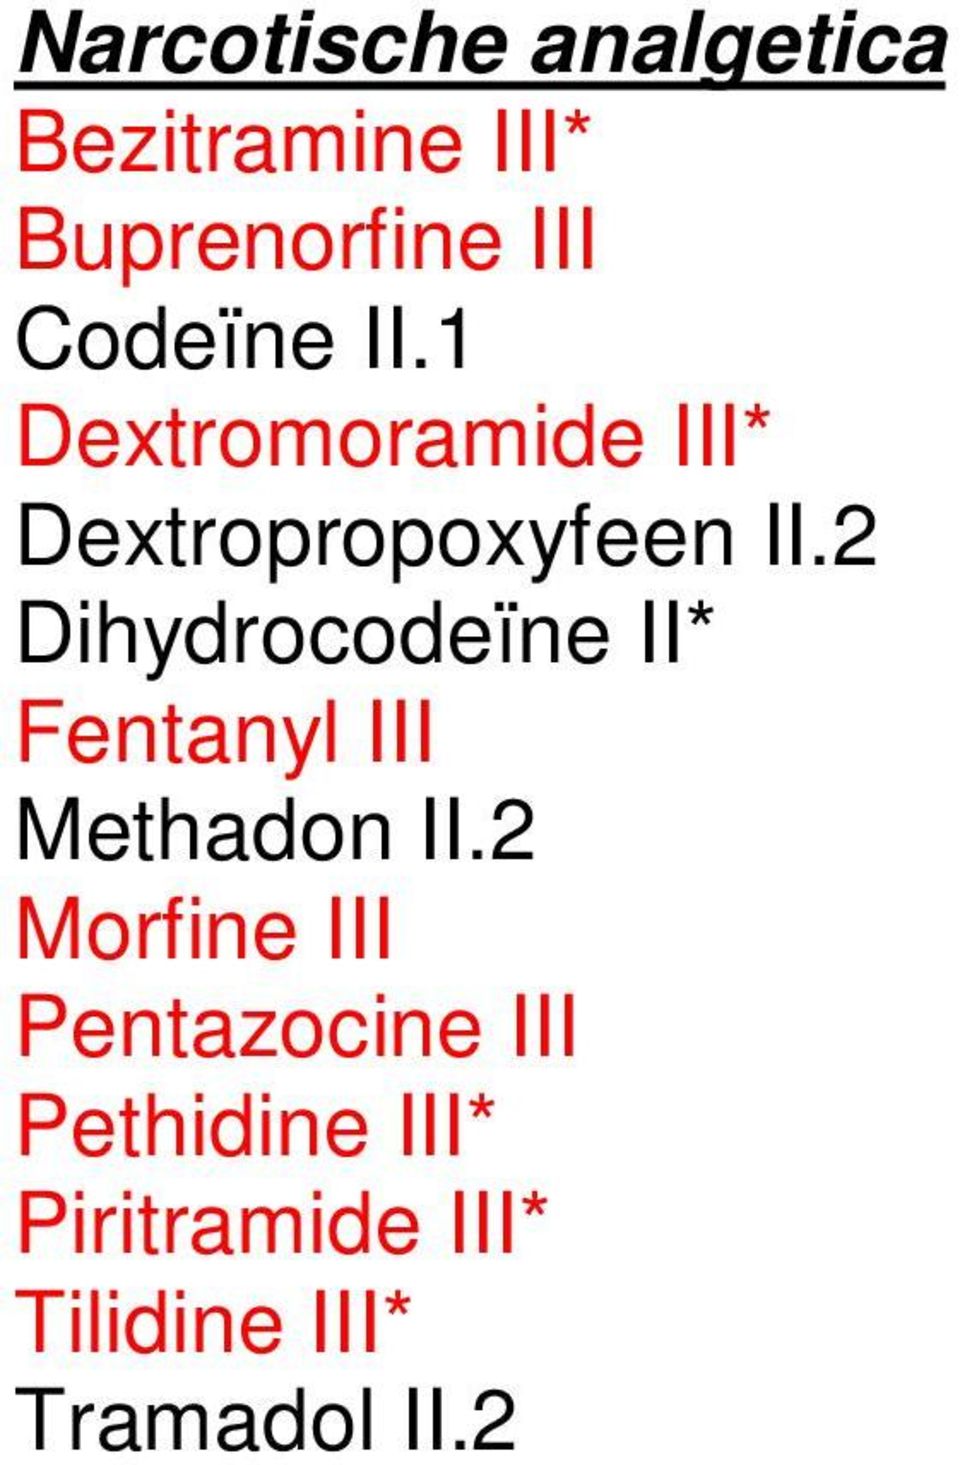 2 Dihydrocodeïne II* Fentanyl III Methadon II.